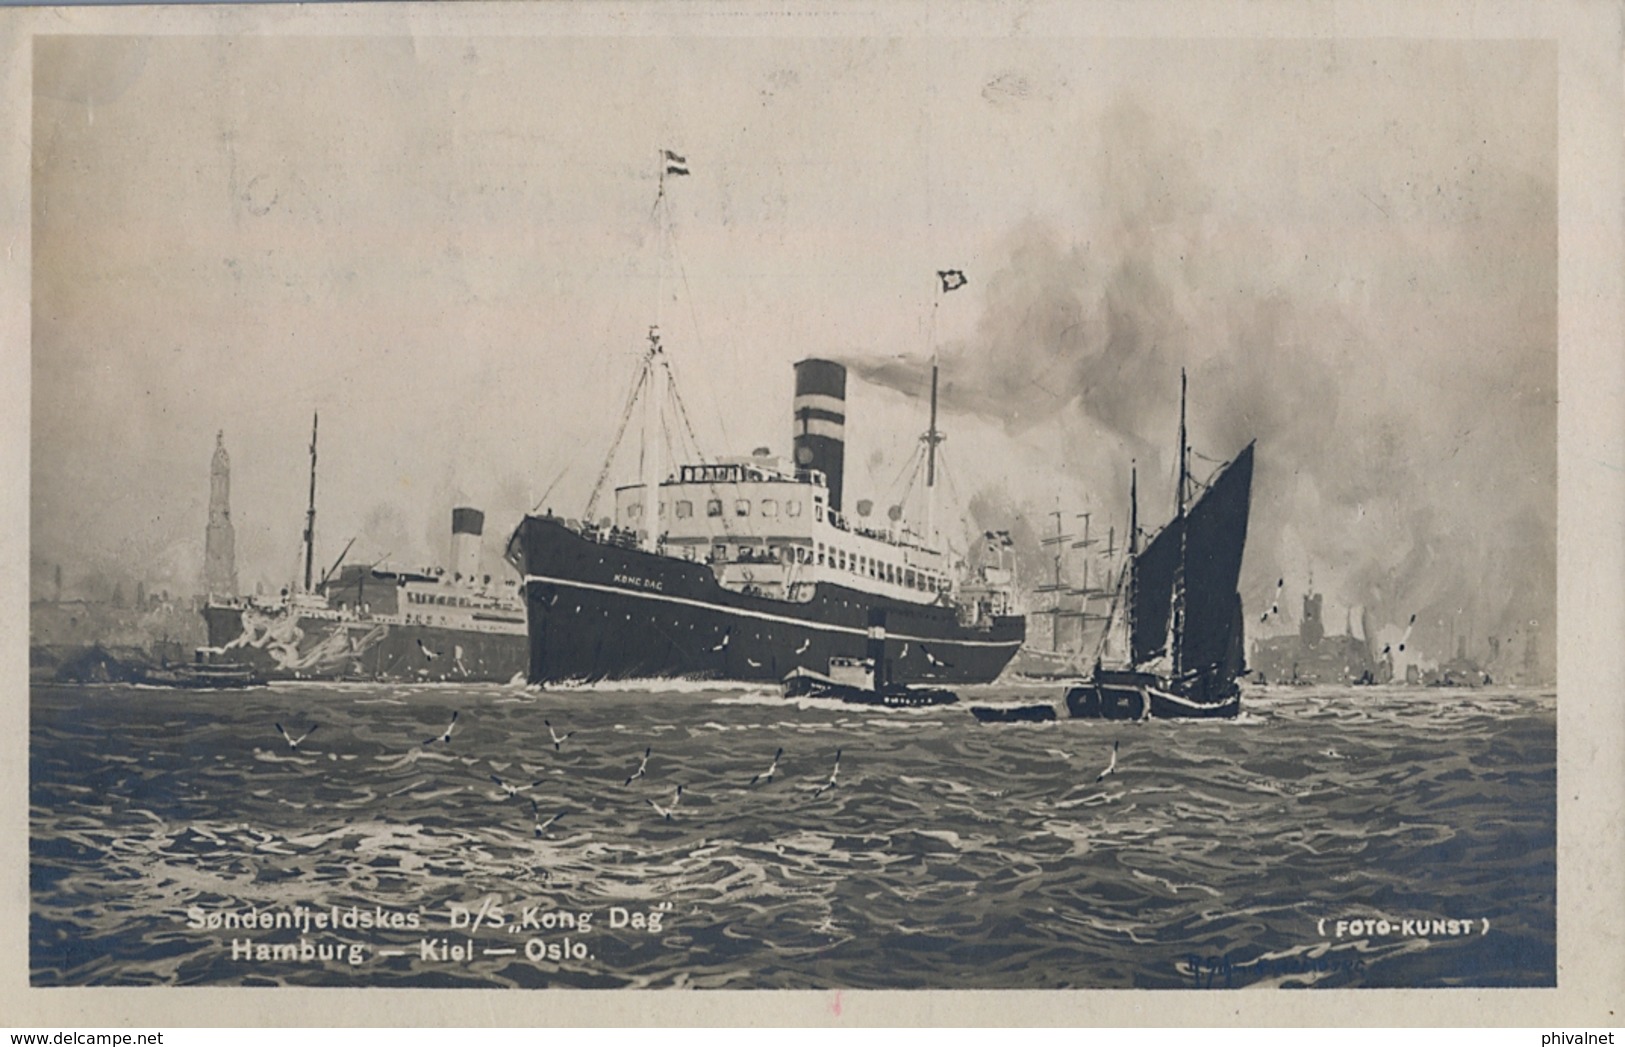 NORUEGA , 1926 BARCOS / SHIPS , TARJETA POSTAL  CIRCULADA , SUECIA , D/S " KONG DAG " , HAMBURG - KIEL - OSLO - Paquebote